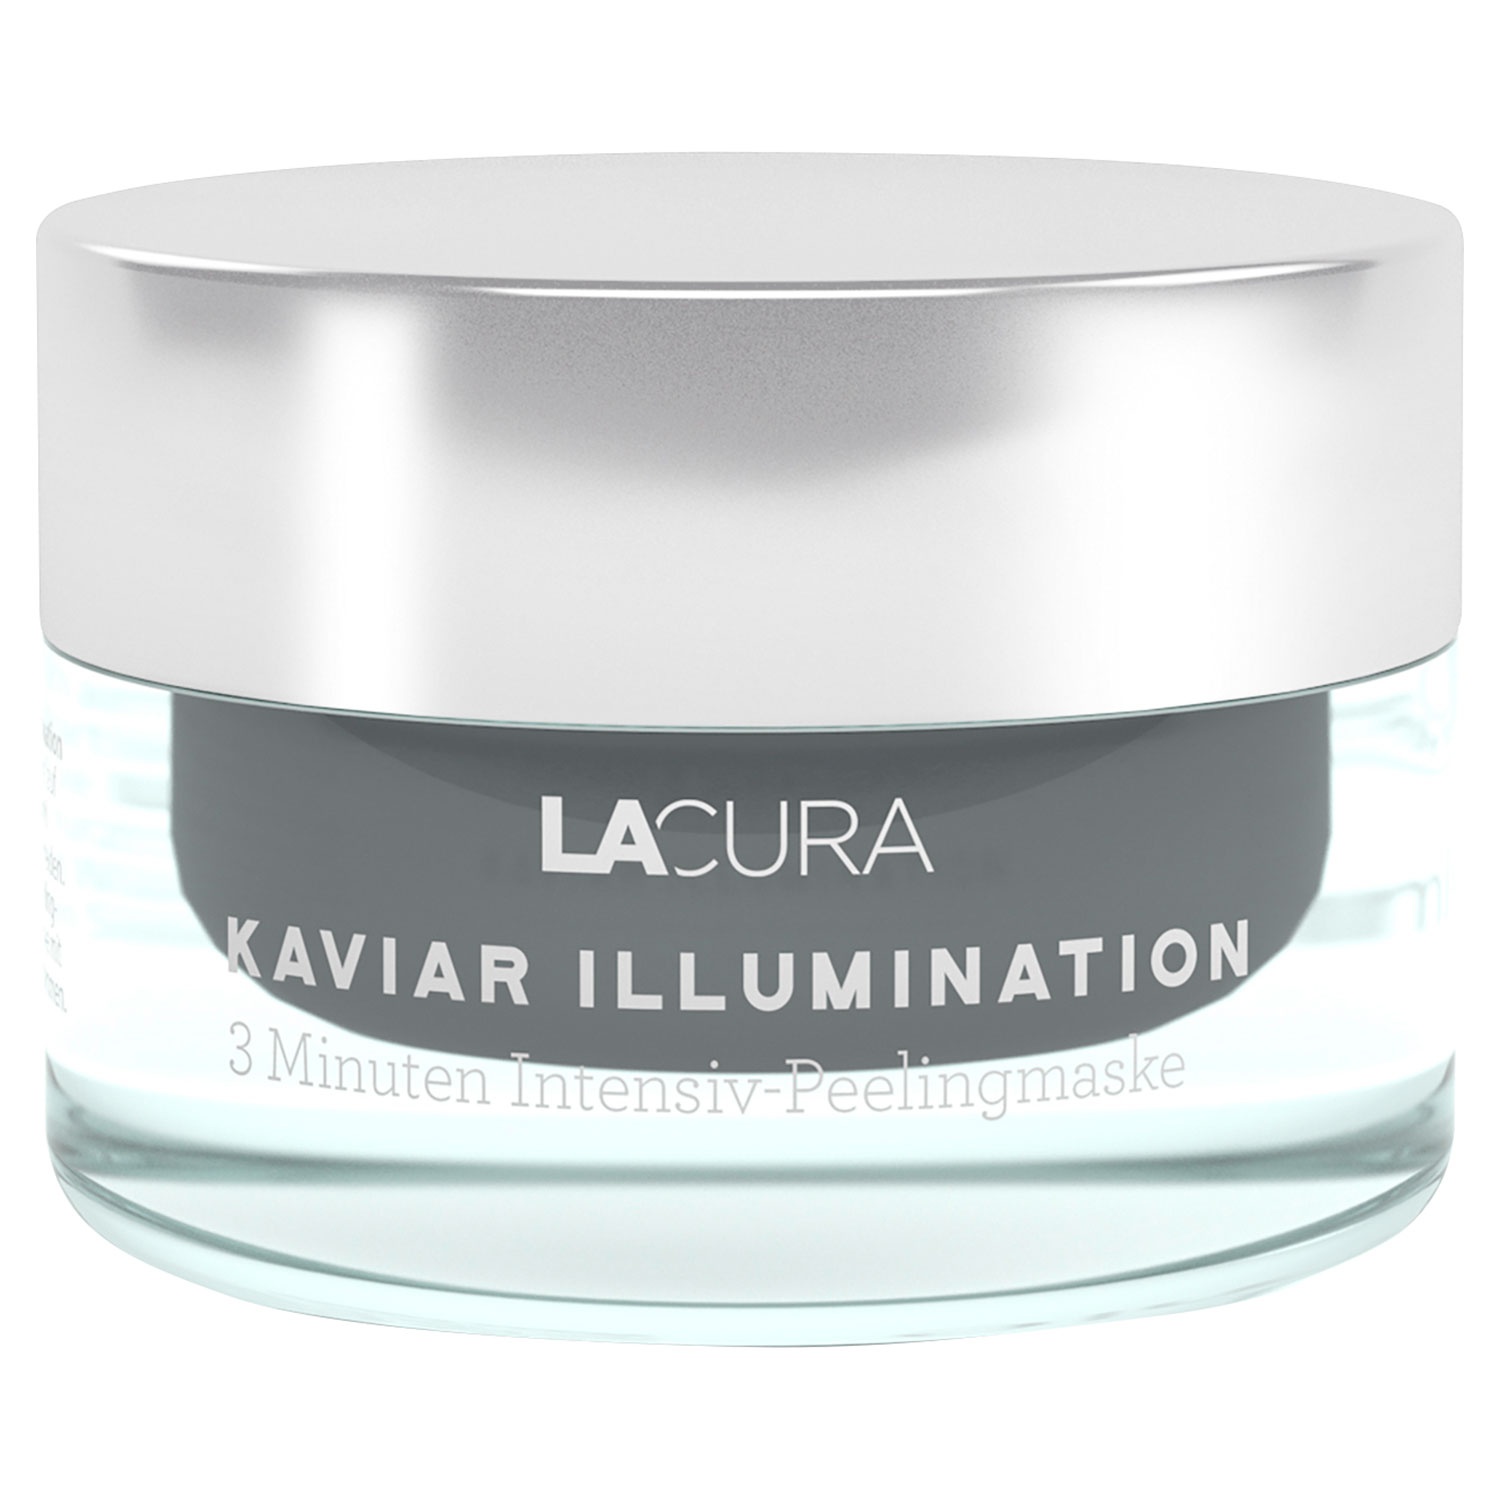 LACURA Kaviar Illumination Gesichtspflege 50 ml